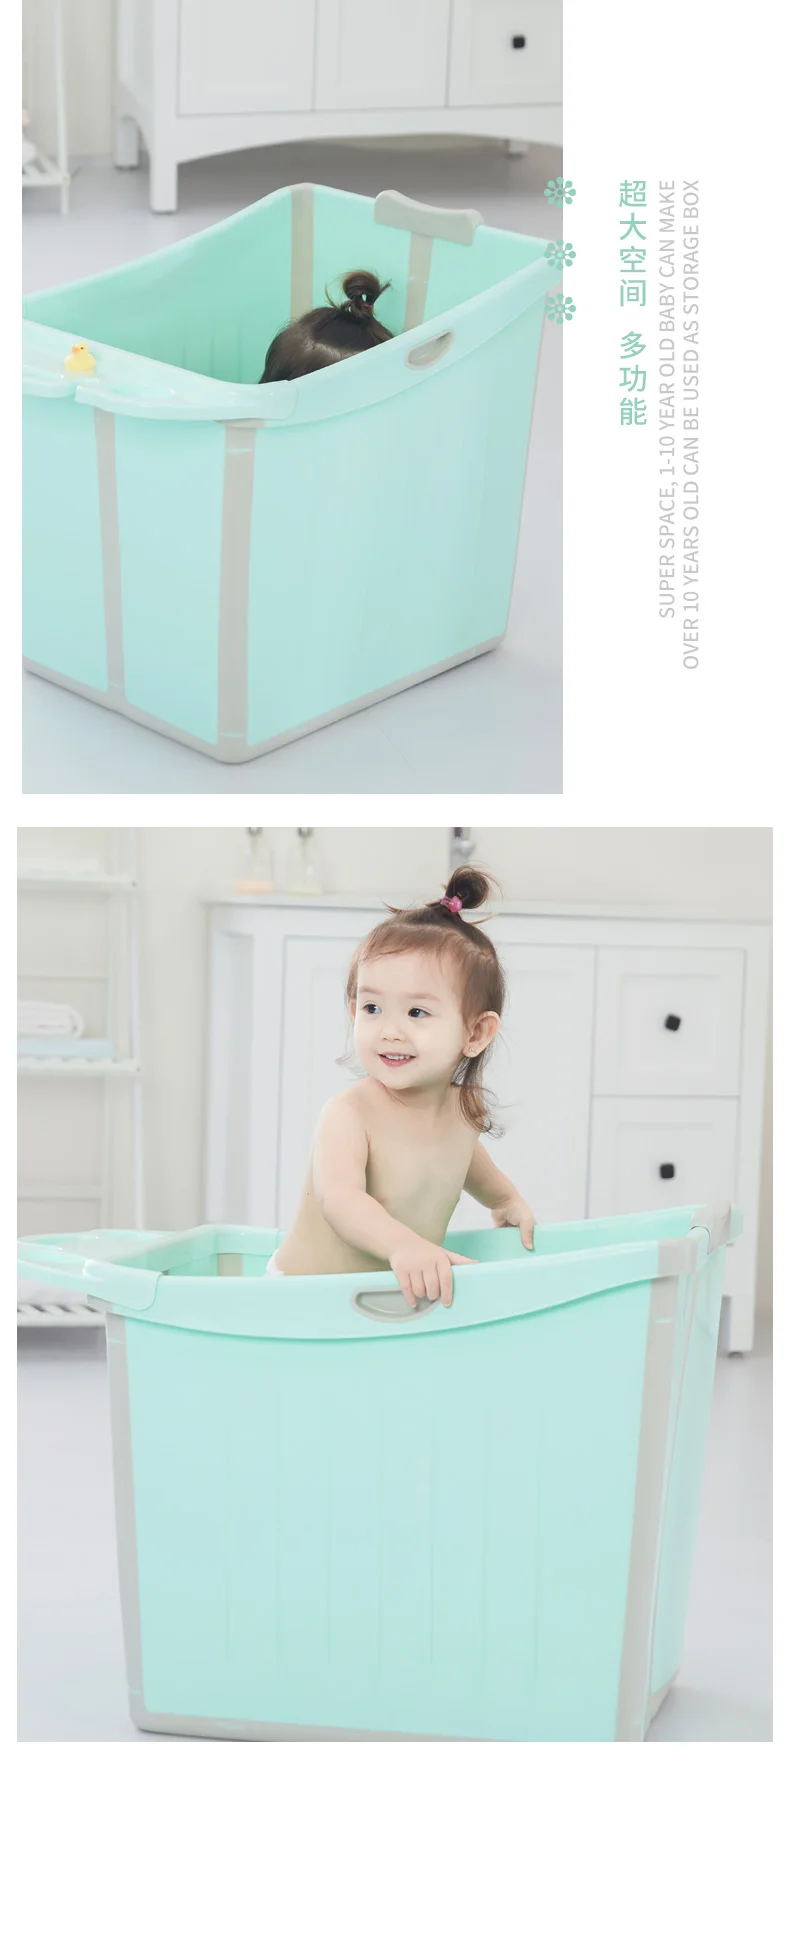 Большая складная детская ванночка детская Ванна бочка безопасный PP материал Детская ванна для купания ванна со съемной скамейкой, W